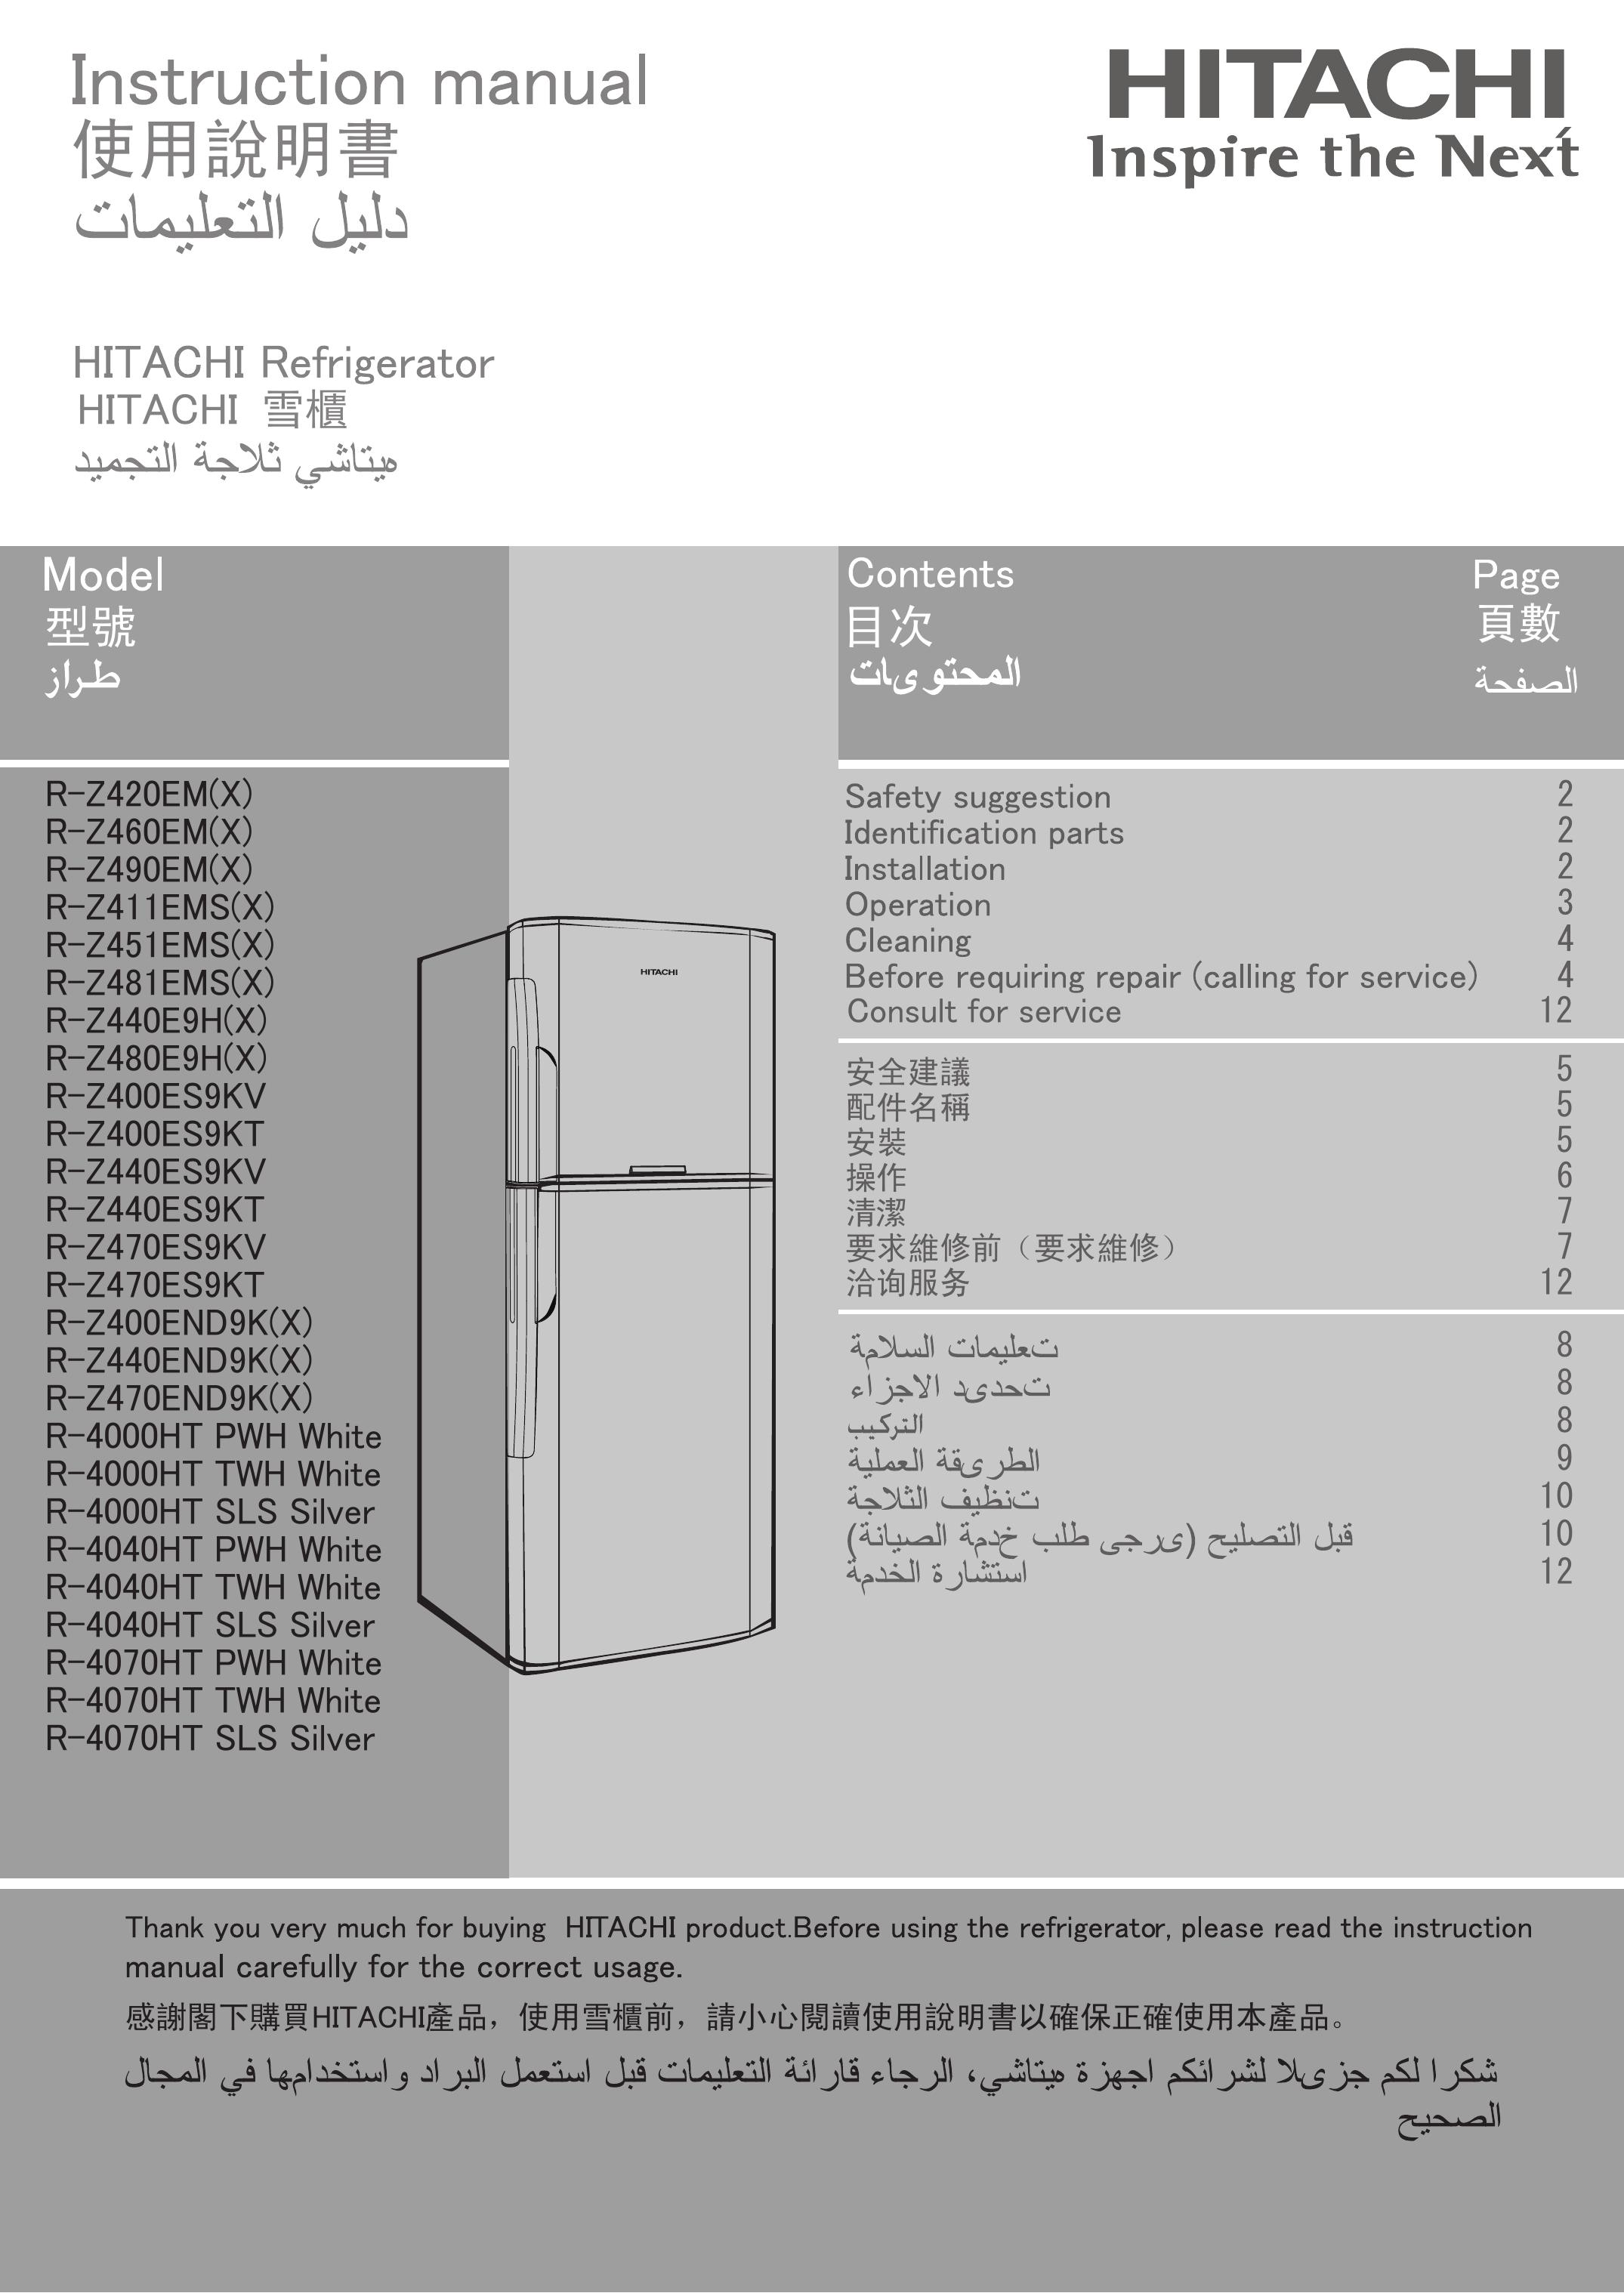 Hitachi R-4040HT SLS Silver Refrigerator User Manual